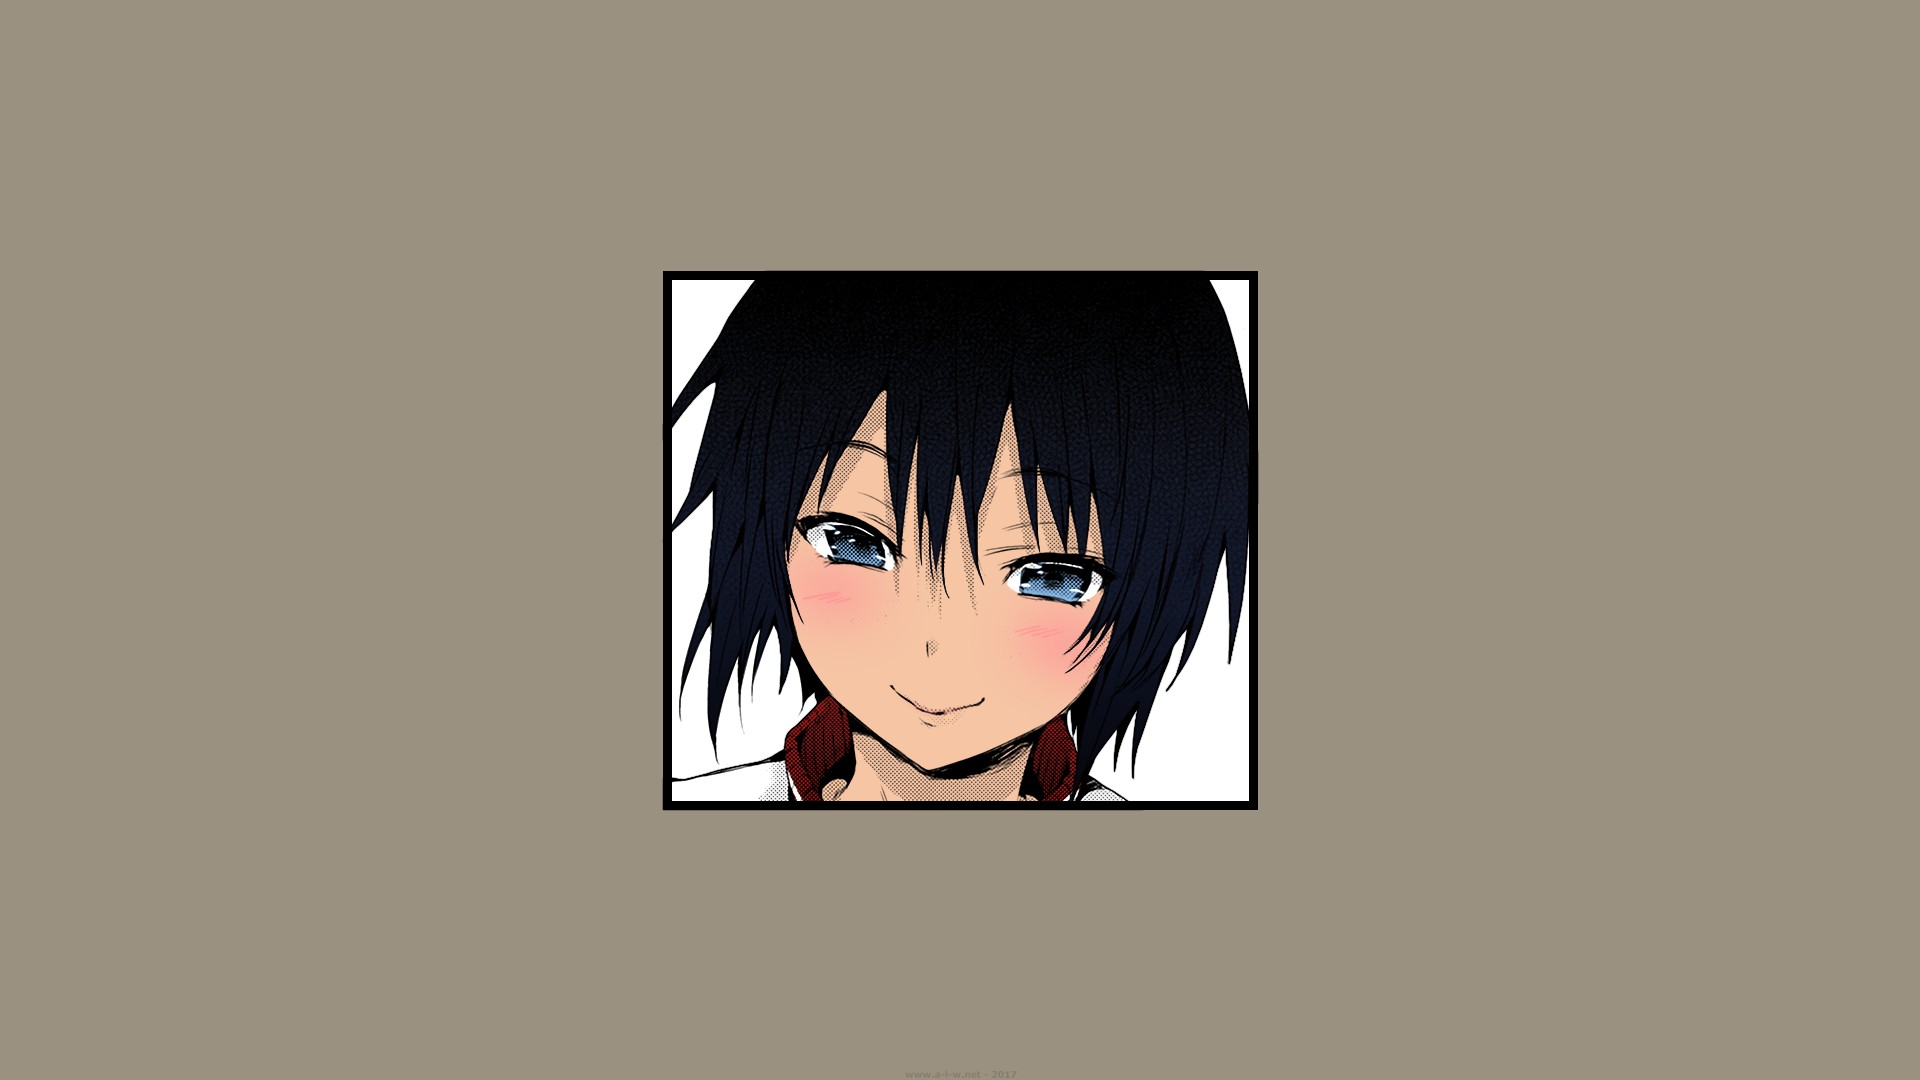 Hisasi, Short hair, Blue eyes, Black hair, Smiling, Blushing, Anime, Manga, Anime girls Wallpaper